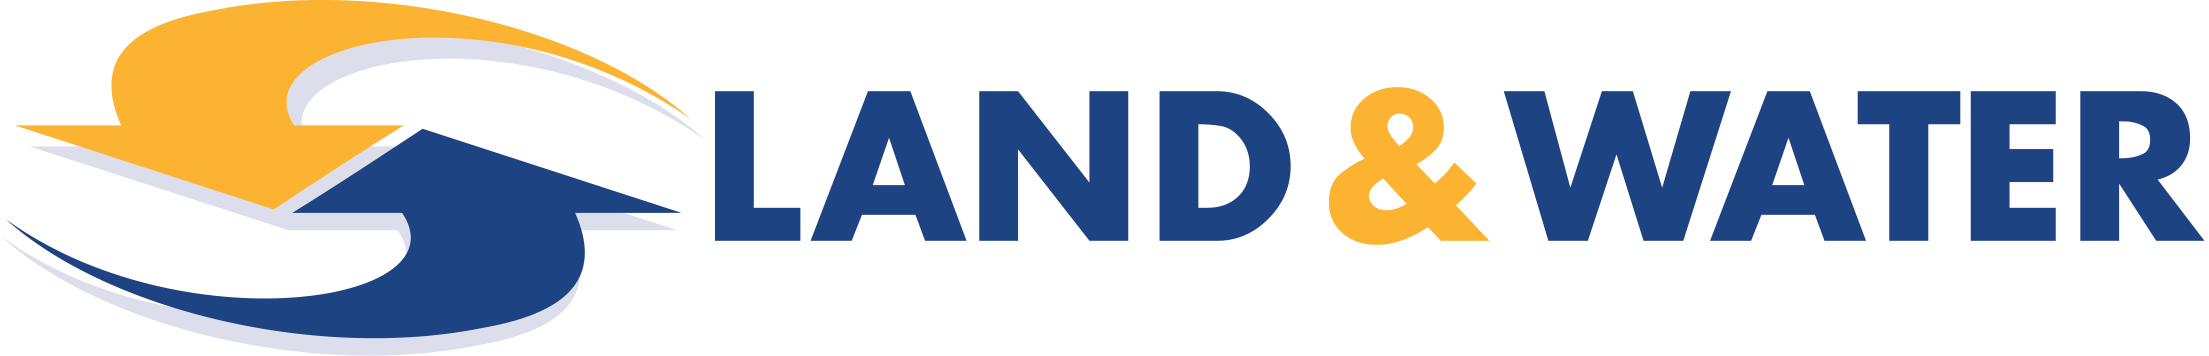 Land & Water logo